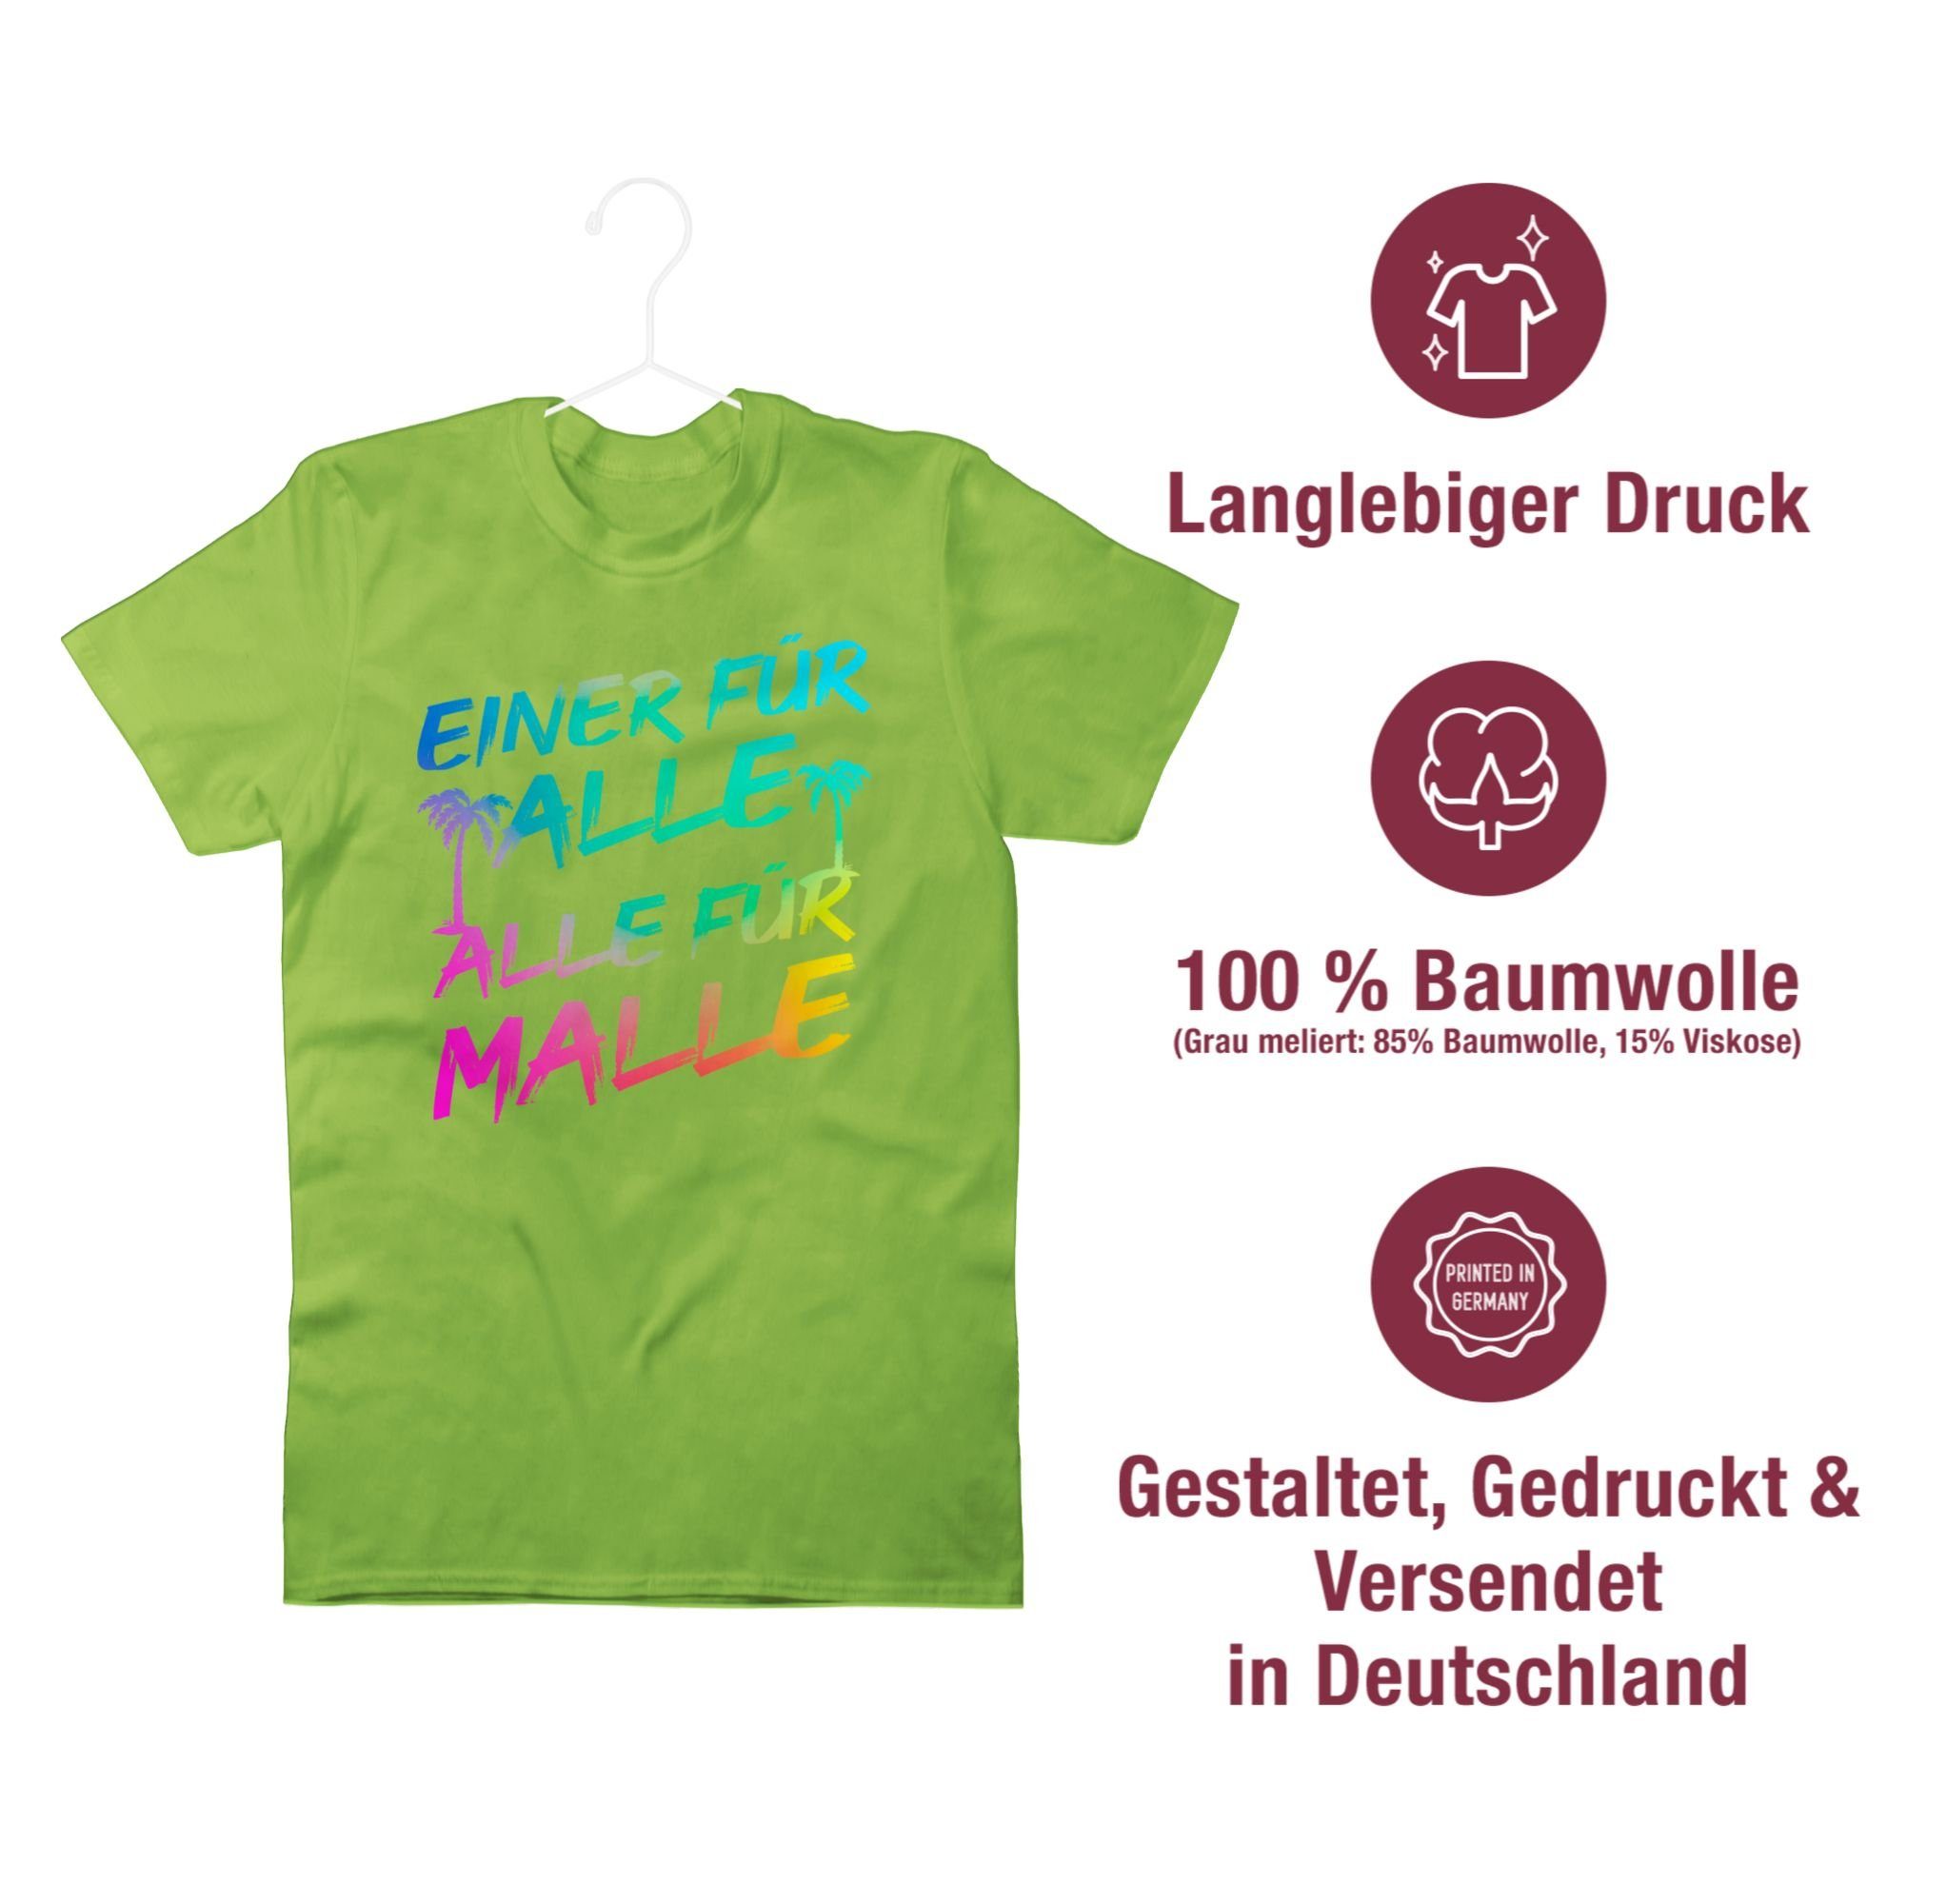 Shirtracer T-Shirt Hellgrün Herren Alle 03 für Alle Einer für alle für Malle - Sommerurlaub Malle